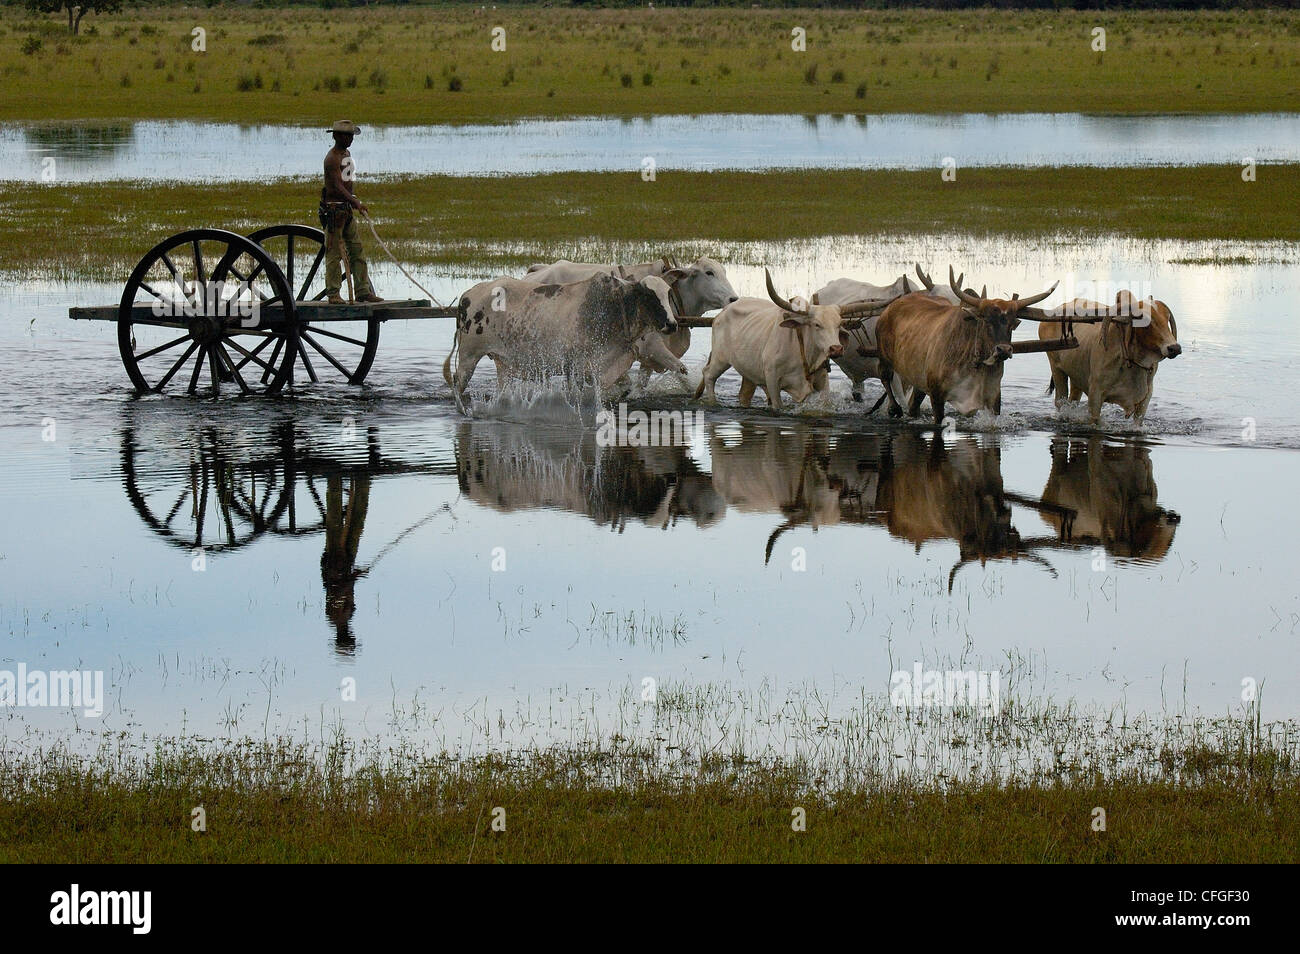 Ochsenkarren während des Hochwassers verwendet werden, wenn kein anderes Fahrzeug Terrains verwalten kann. Zentral-Pantanal, Brasilien Stockfoto